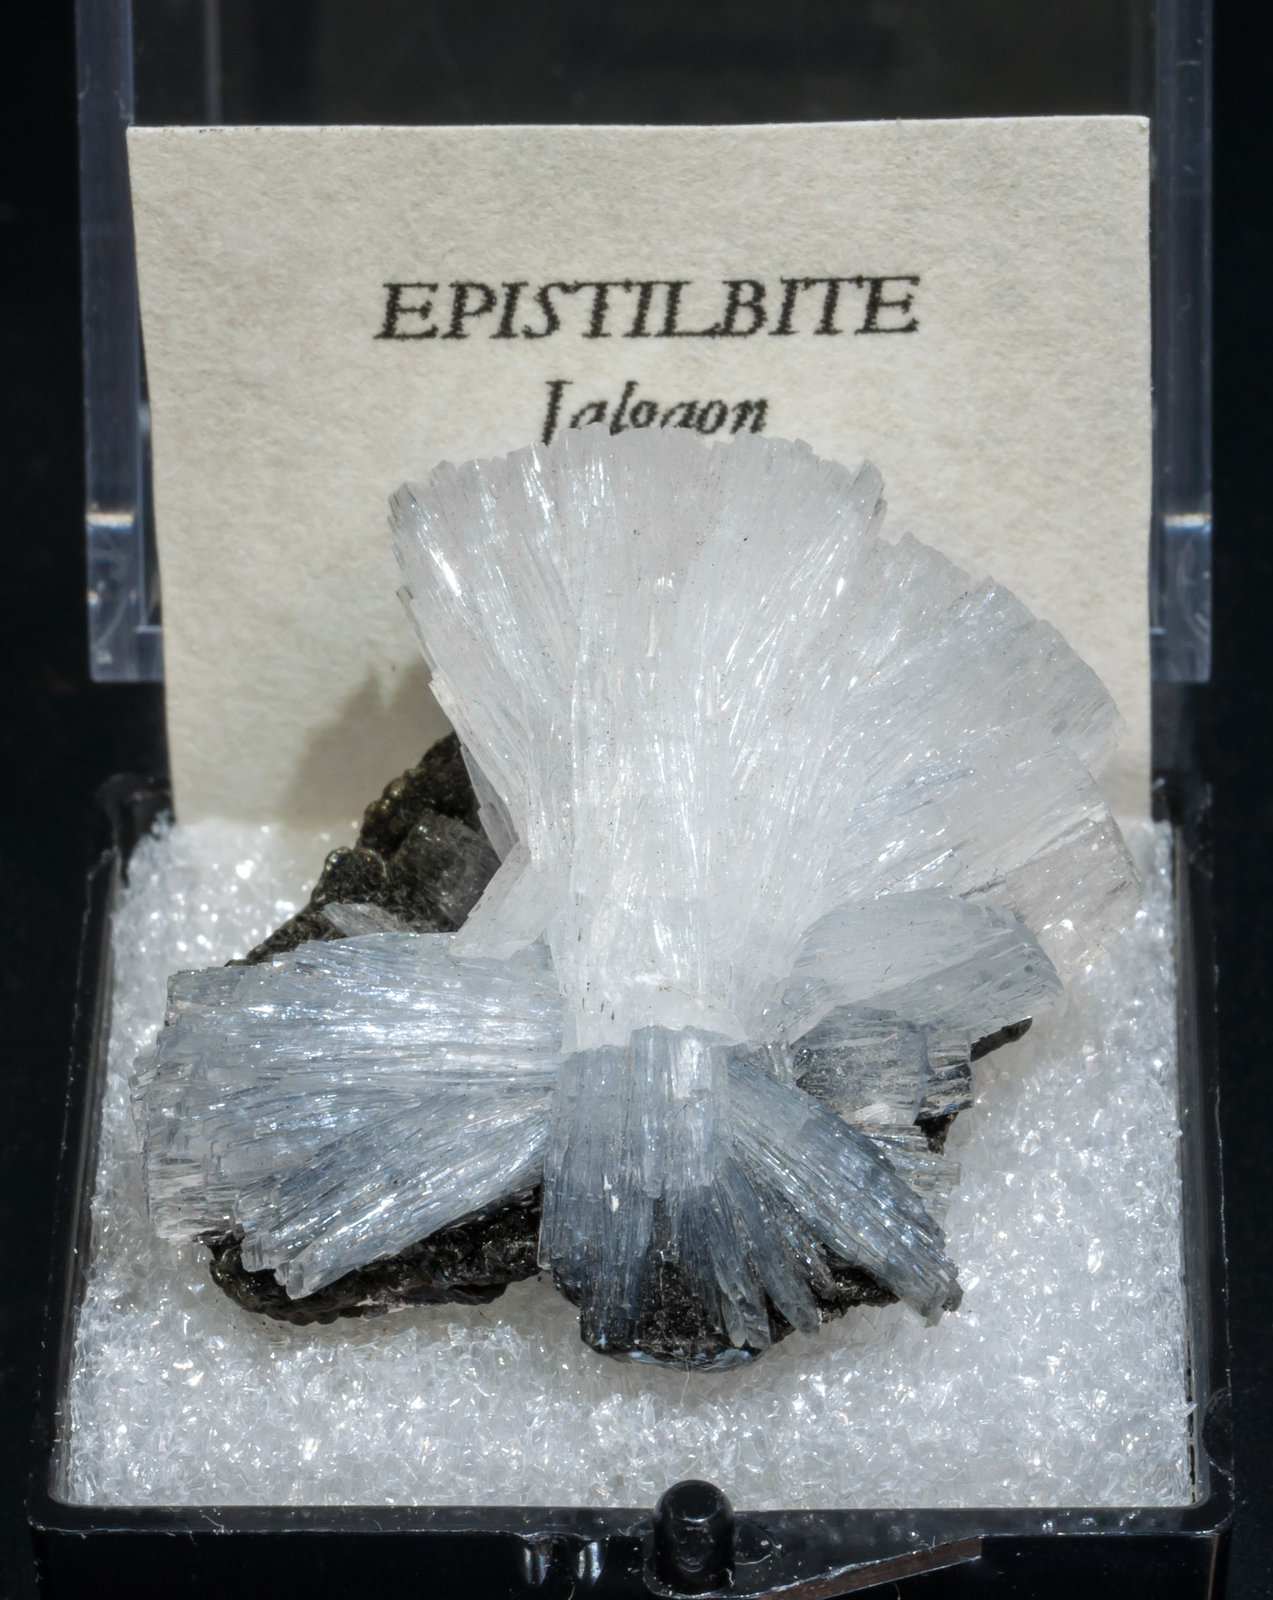 specimens/s_imagesAJ1/Epistilbite-TB62AJ1f1.jpg